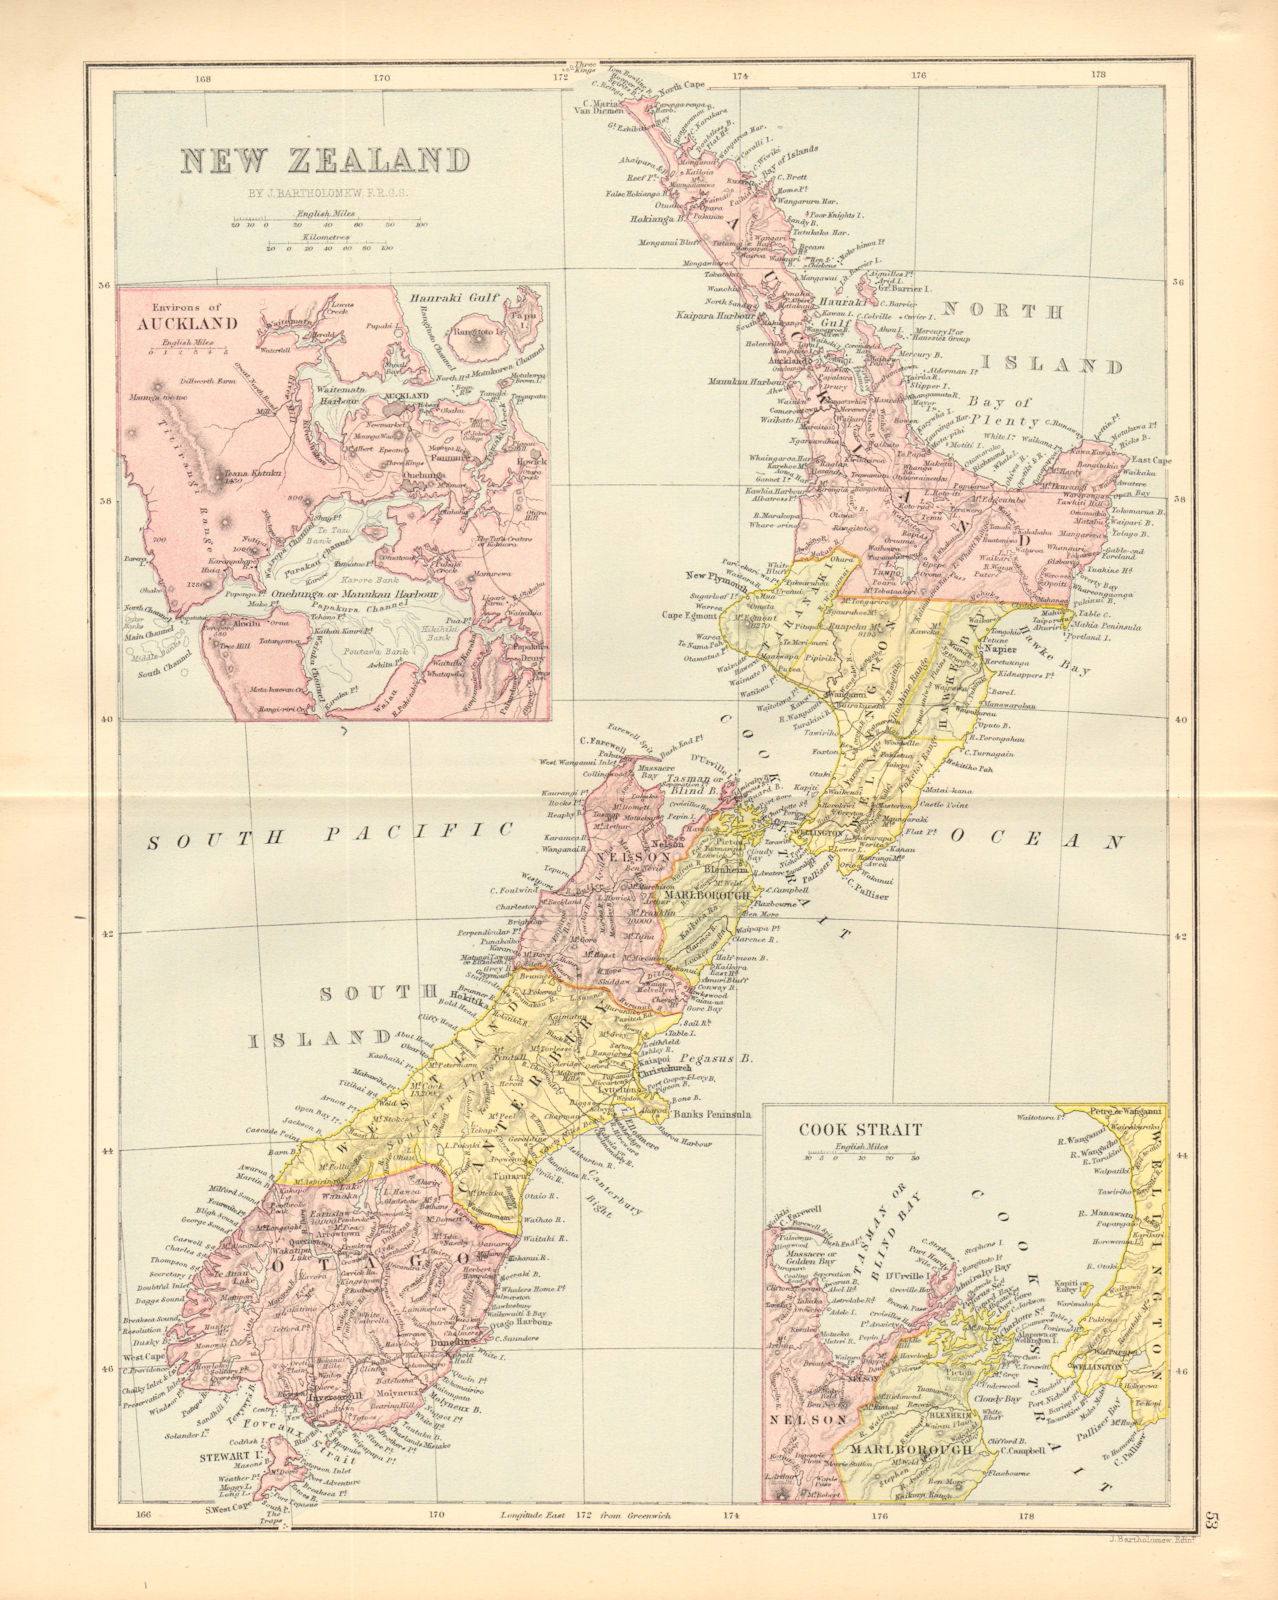 NEW ZEALAND. Showing 1870 provinces. Auckland environs. BARTHOLOMEW 1876 map